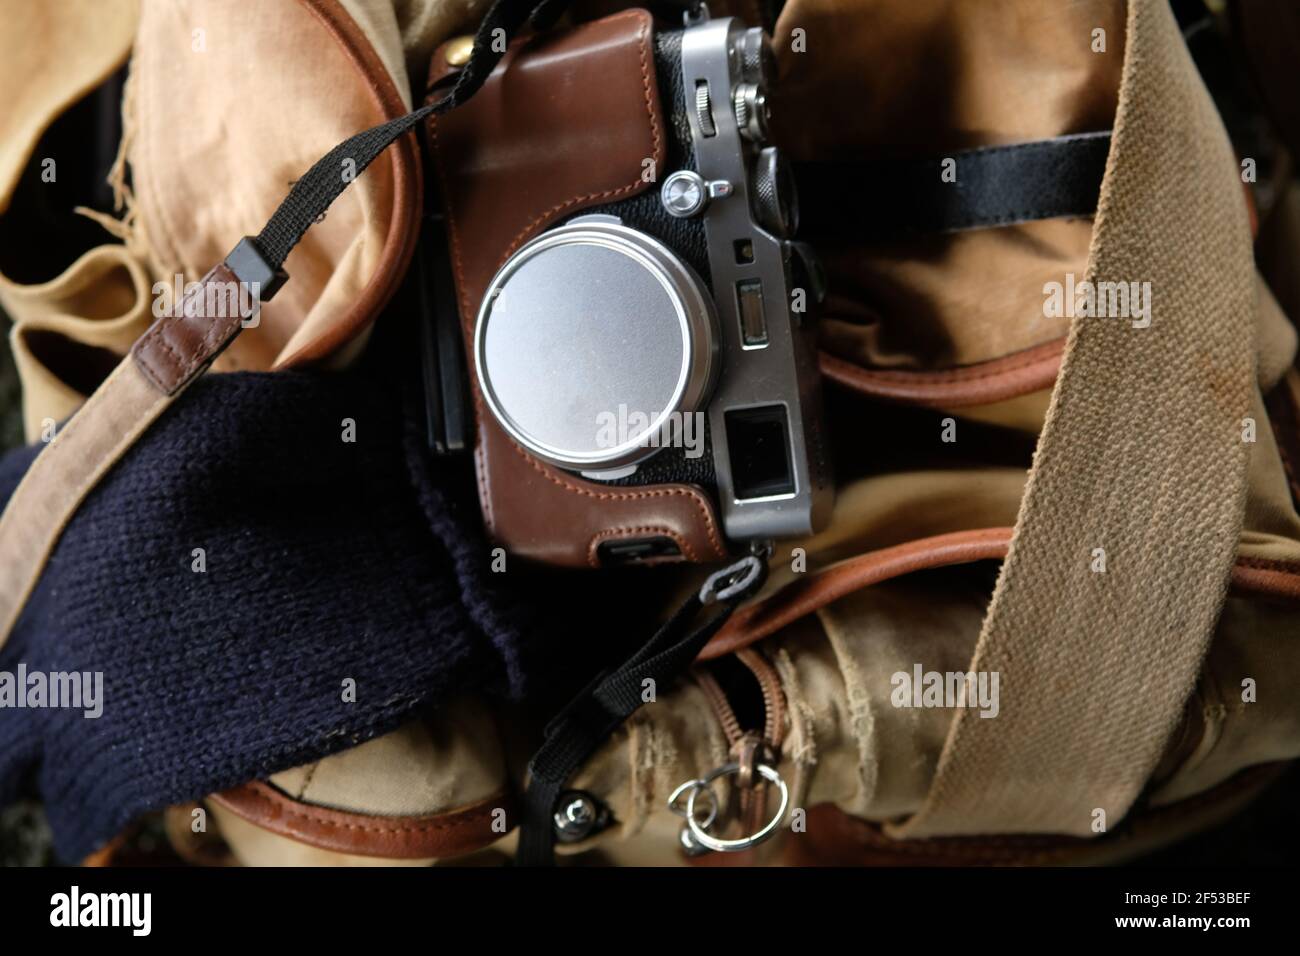 Dicembre 2020 - UN classico Fuji Fujifilm, X100F in cima Una vecchia borsa per fotocamera Billingham Foto Stock